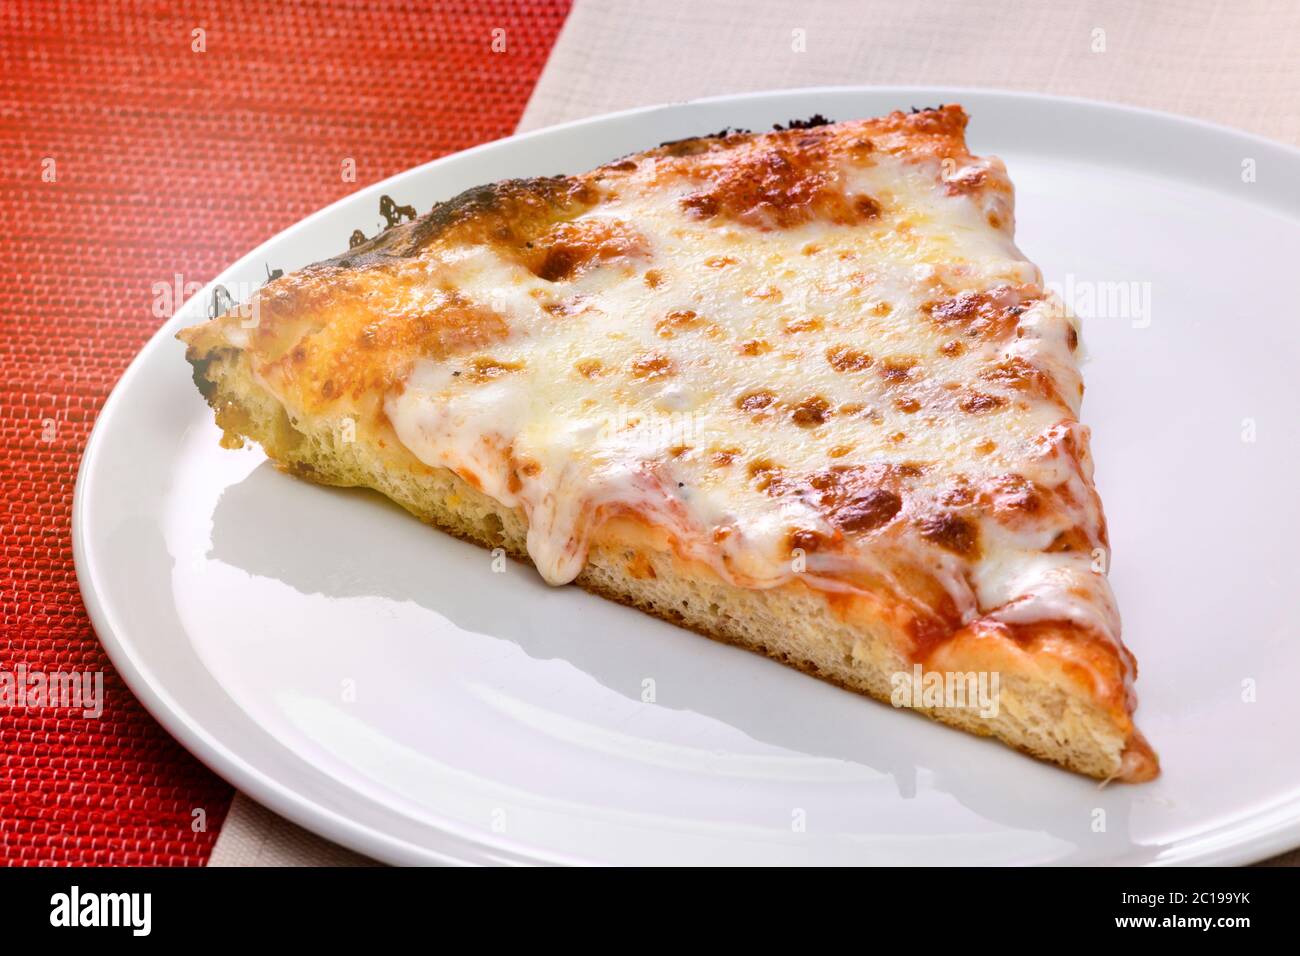 Ein Stück traditionelle italienische Pizza Margherita auf einem Teller mit Tomaten und geschmolzenem Mozzarella-Käse in einer Nahaufnahme aus dem hohen Winkel Stockfoto